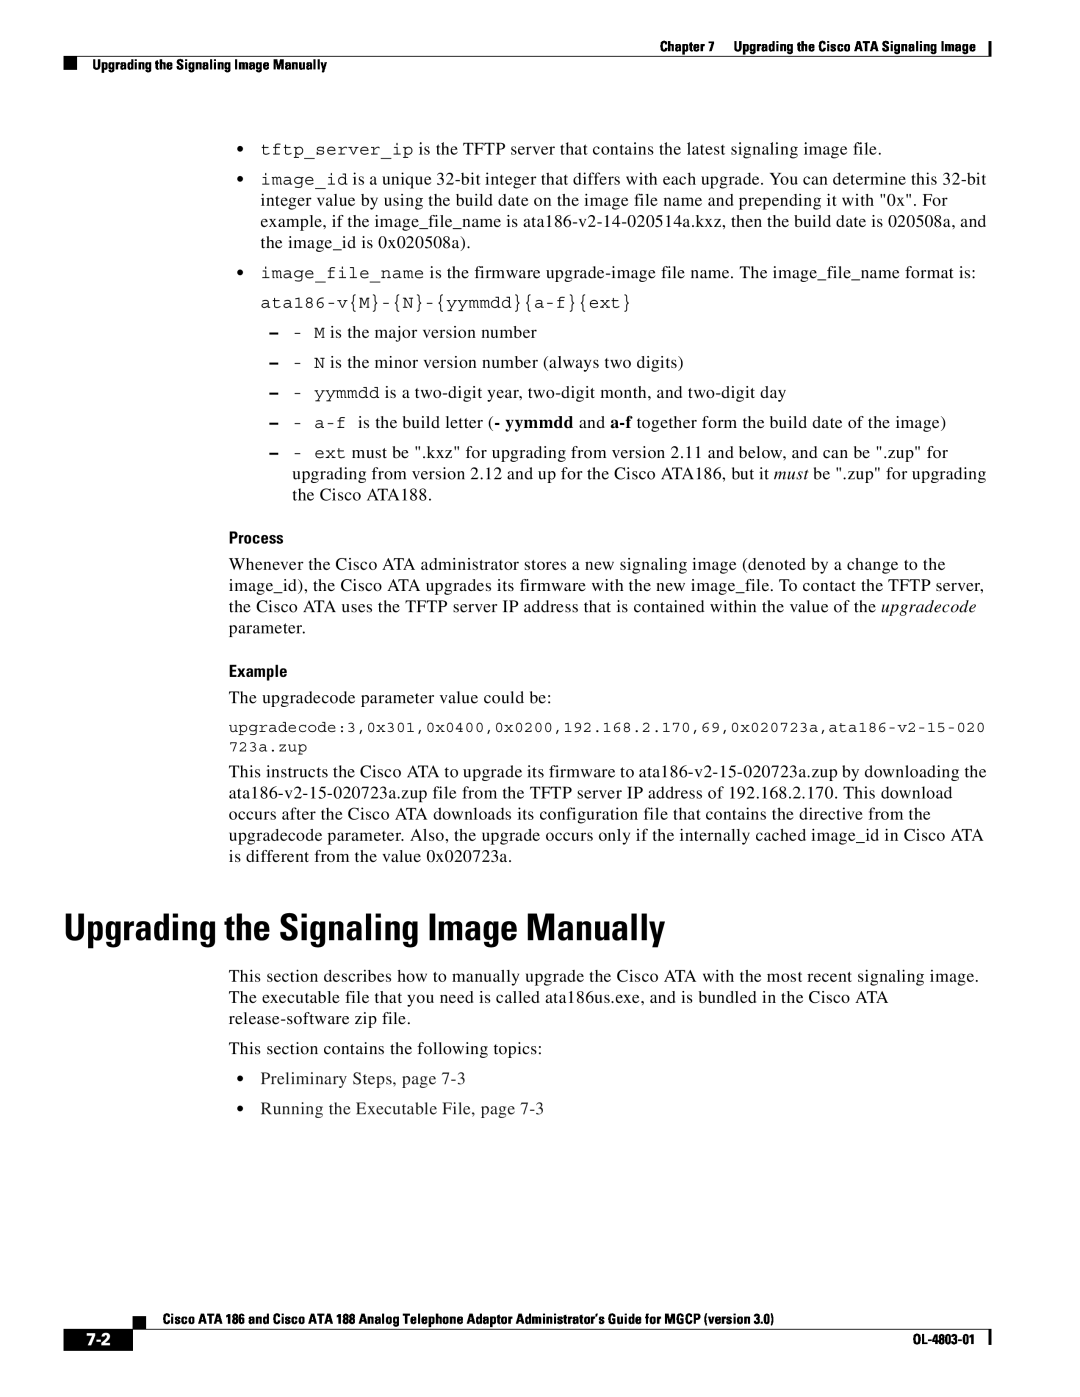 Cisco Systems ATA 186 manual Upgrading the Signaling Image Manually, Process, Example 